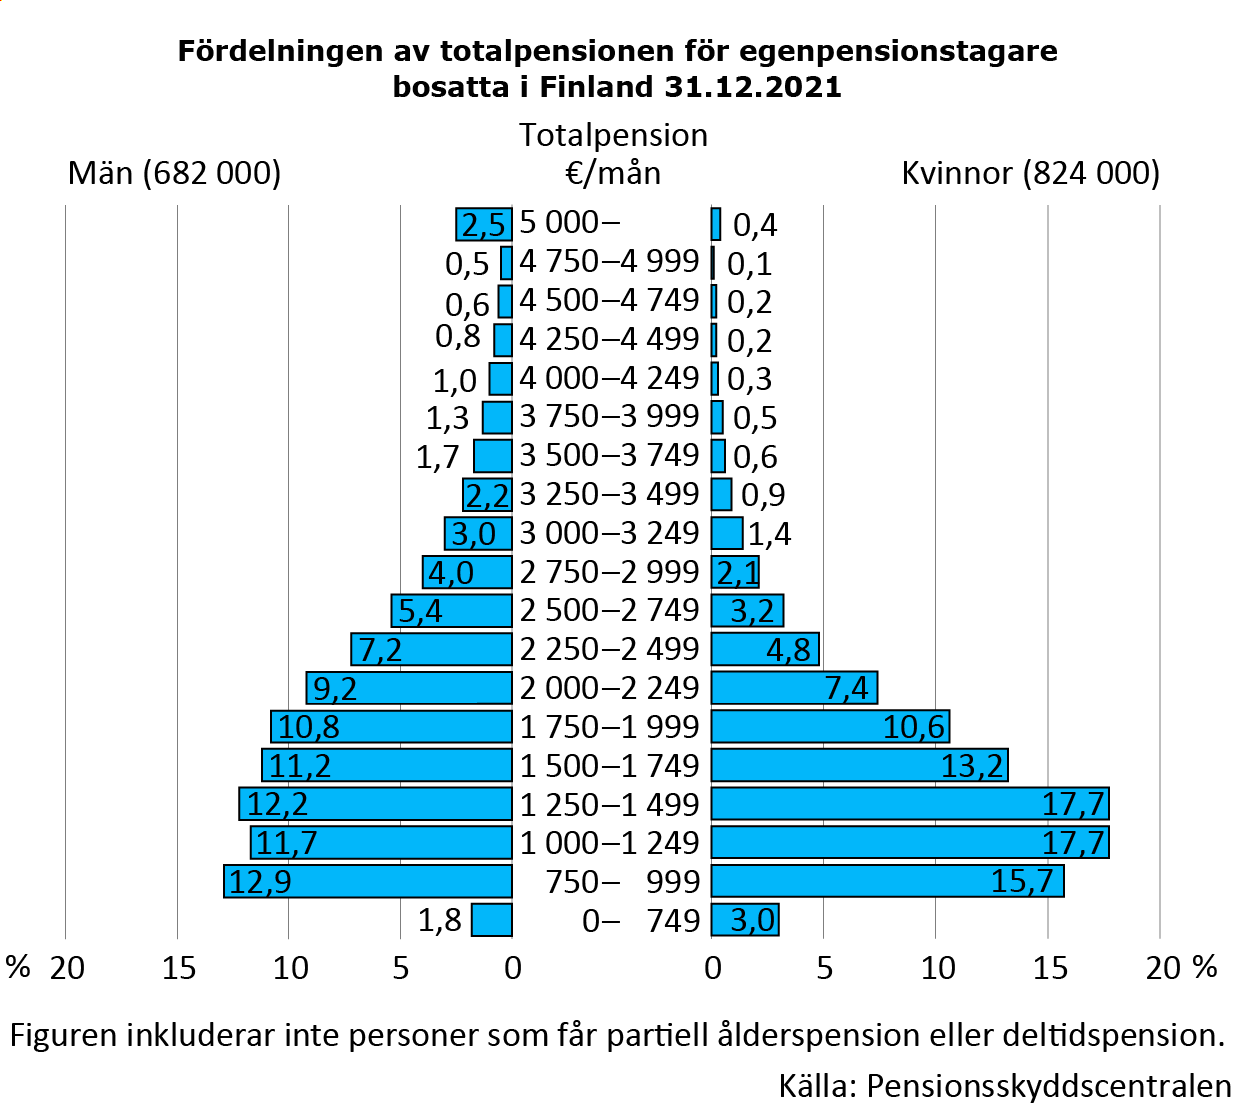 Fördelningen av totalpensionerna bland egenpensionstagare bosatta i Finland efter kön i slutet av år 2021. Stapeldiagrammet visar att kvinnors totalpension är lägre än männens. Ca en tredjedel av kvinnorna får 1000–1499 euro i totalpension. Något mindre än 20 procent får mindre än det, och drygt 20 procent av kvinnorna får minst 2 000 euro i totalpension. På motsvarande sätt har ca en fjärdedel av männen en totalpension mellan 1000 och 1 499 euro. Ca 15 procent får mindre än det. En totalpension på minst 2 000 euro i månaden får 40 procent av männen.